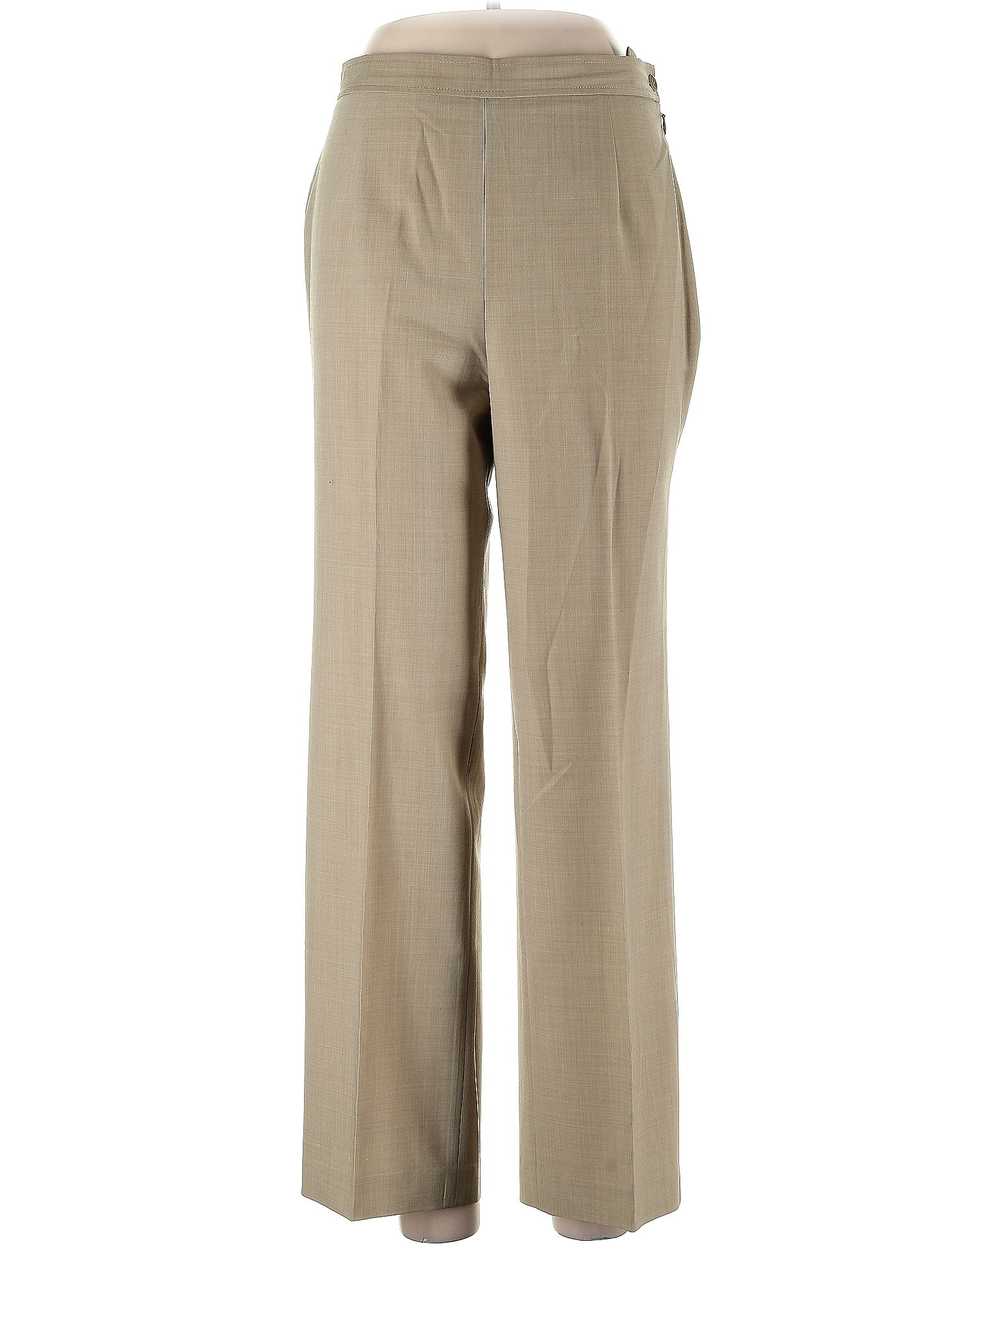 Talbots Women Brown Dress Pants 10 Petites - image 1